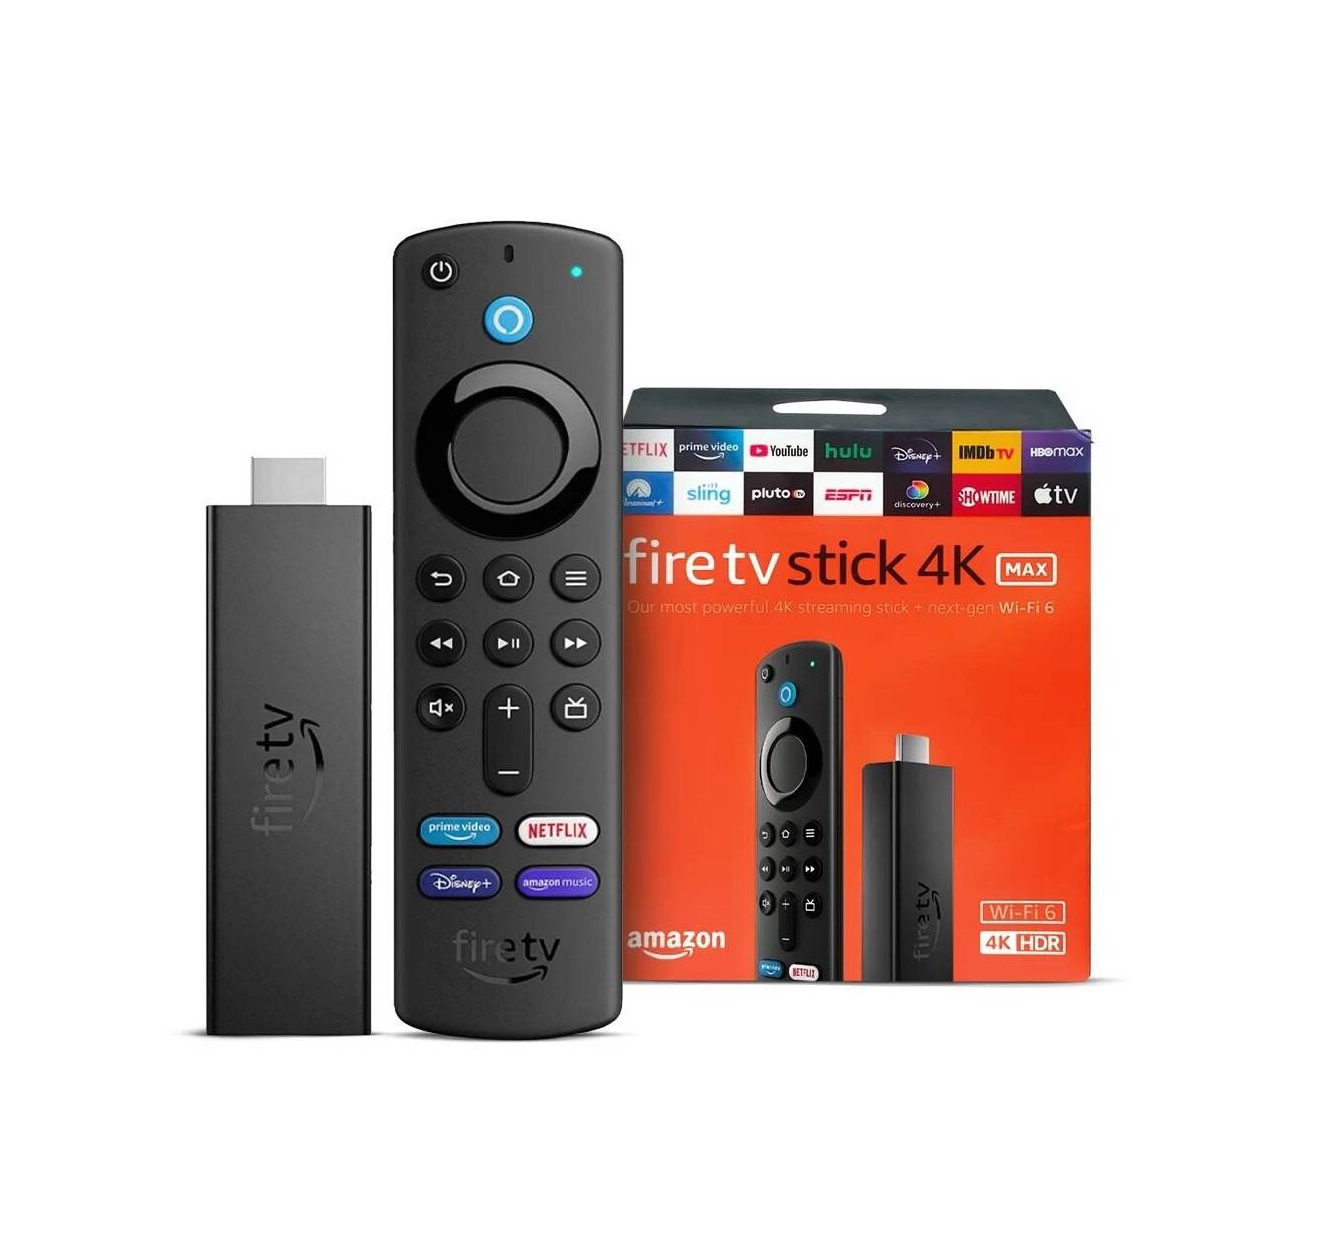 Otros lugares santo Monarquía Convertidor Smart TV Fire Amazon TV Stick 4K MAX WI-FI 6 - Portátil Shop